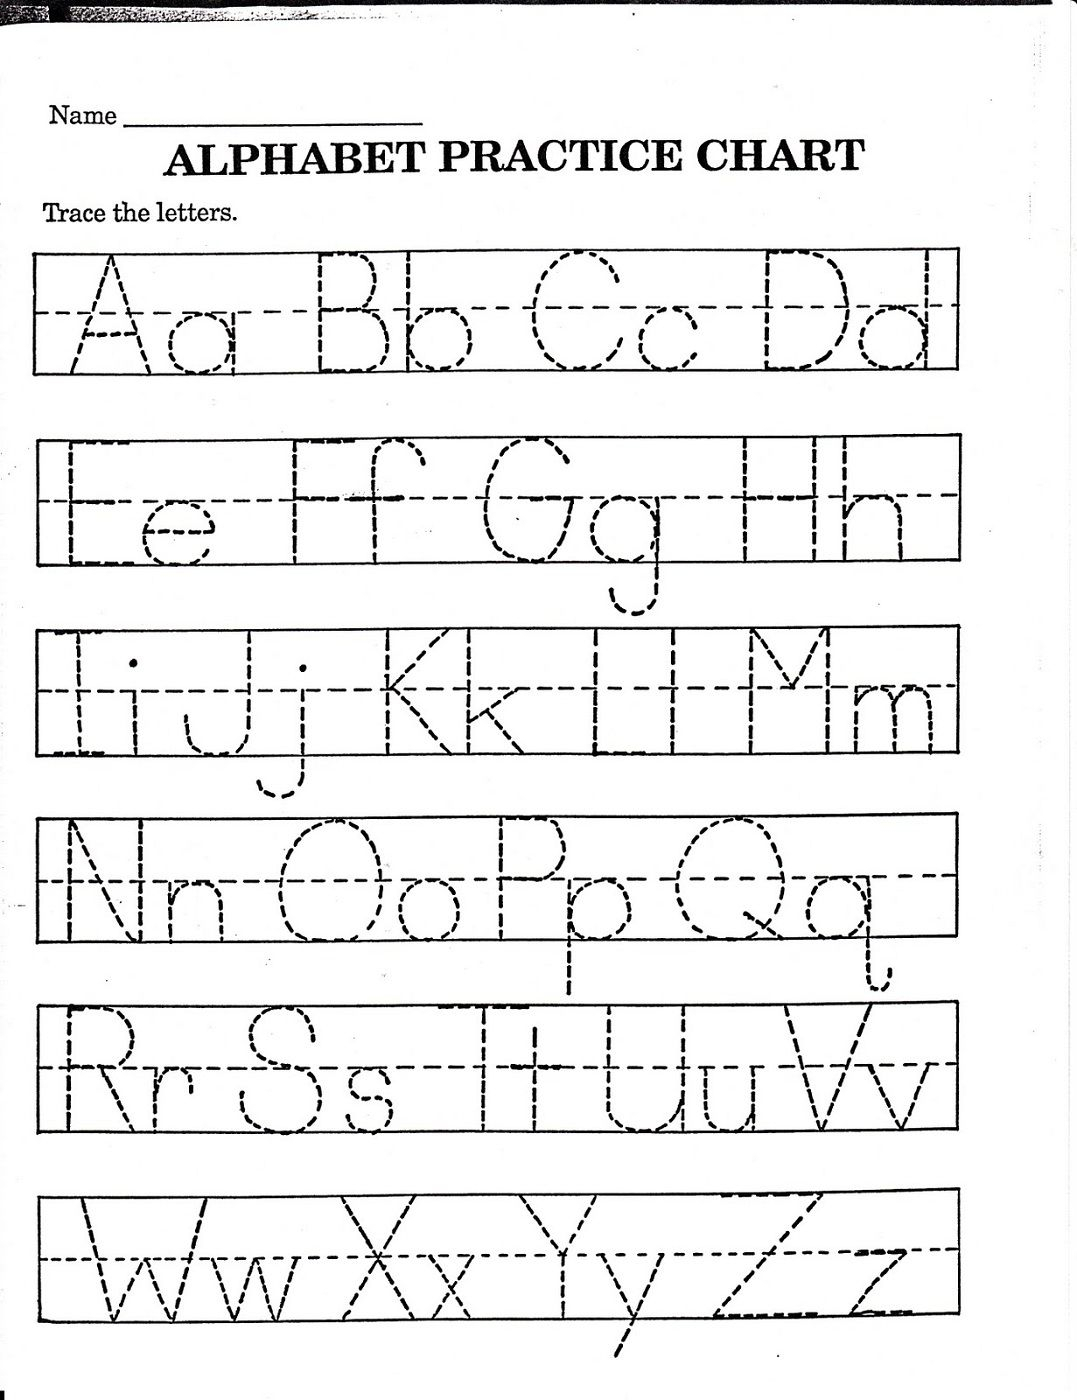 Kindergarten Alphabet Worksheets To Print | Printable inside Alphabet Worksheets For Toddlers